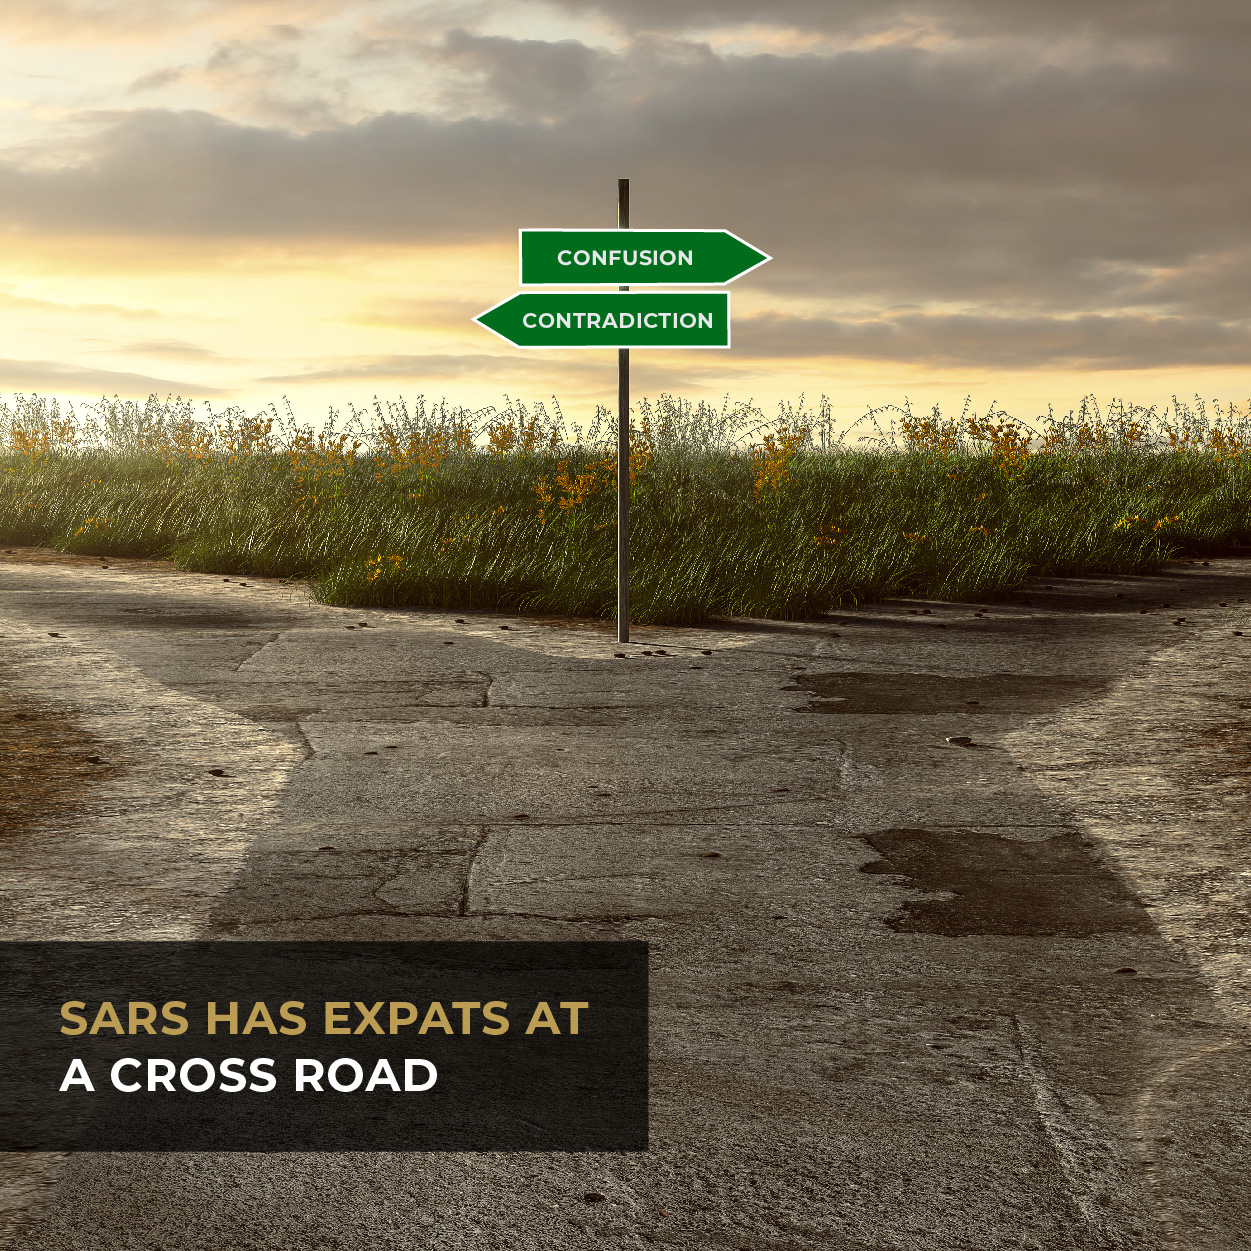 SARS has expats at a cross road